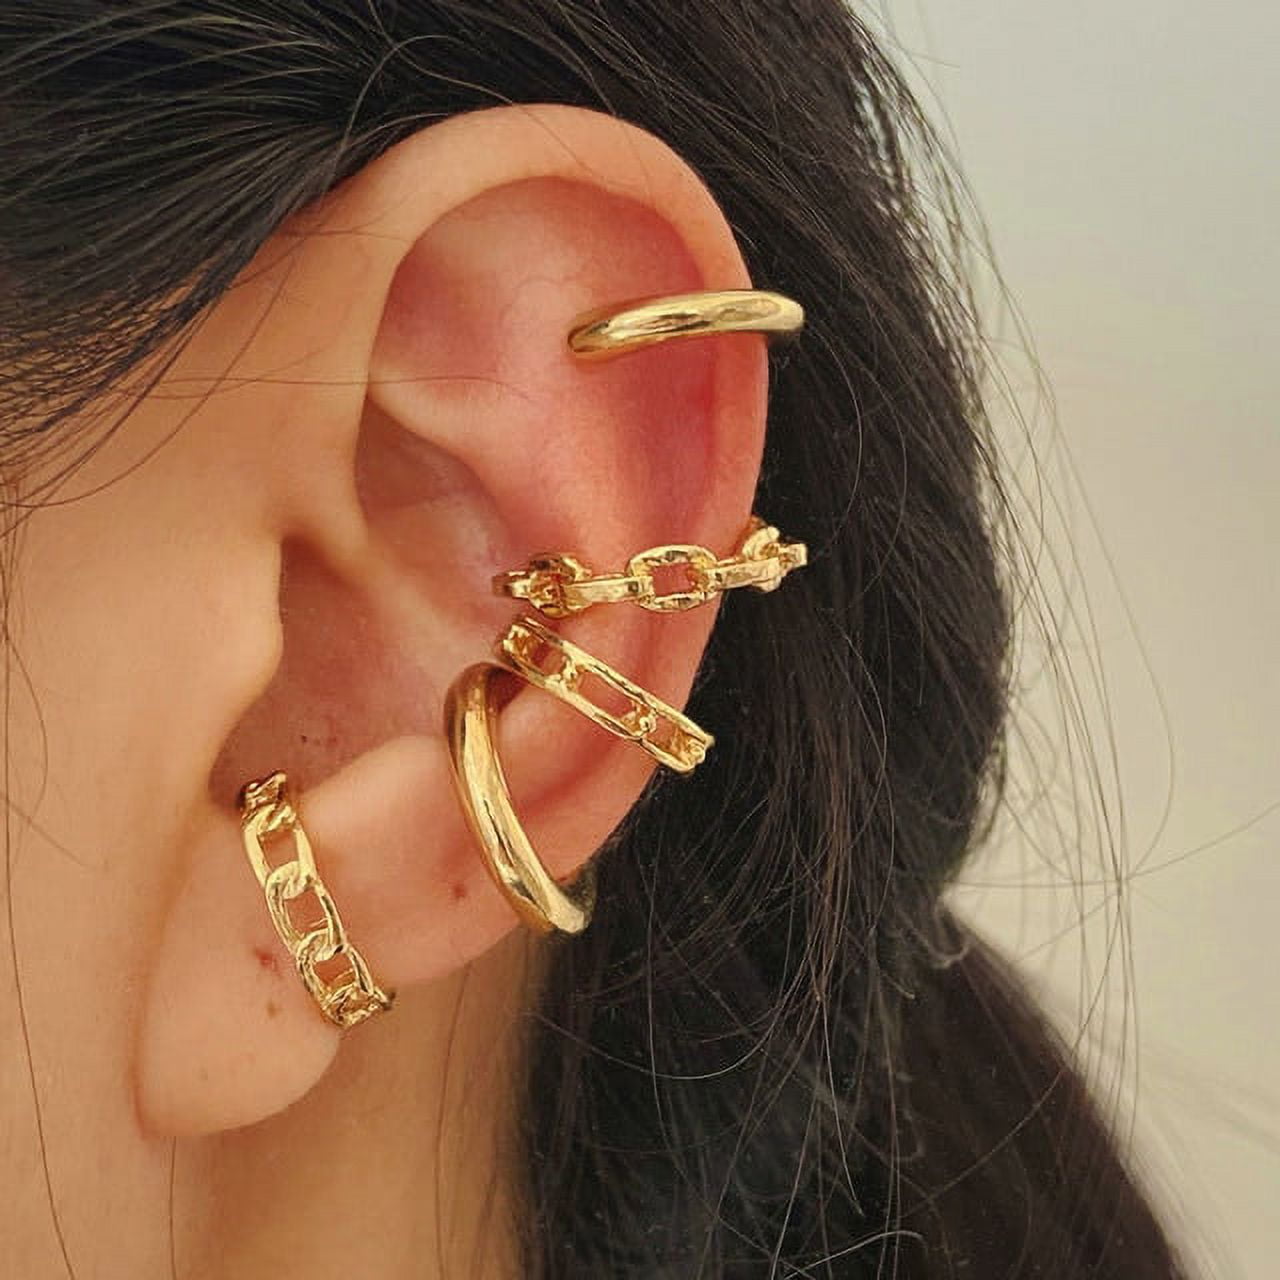 Gold Silver Ear Cuff Black Non-Piercing Ear Clip Earrings for Women Men  Fake Cartilage Earring Cuff Trend Jewelry